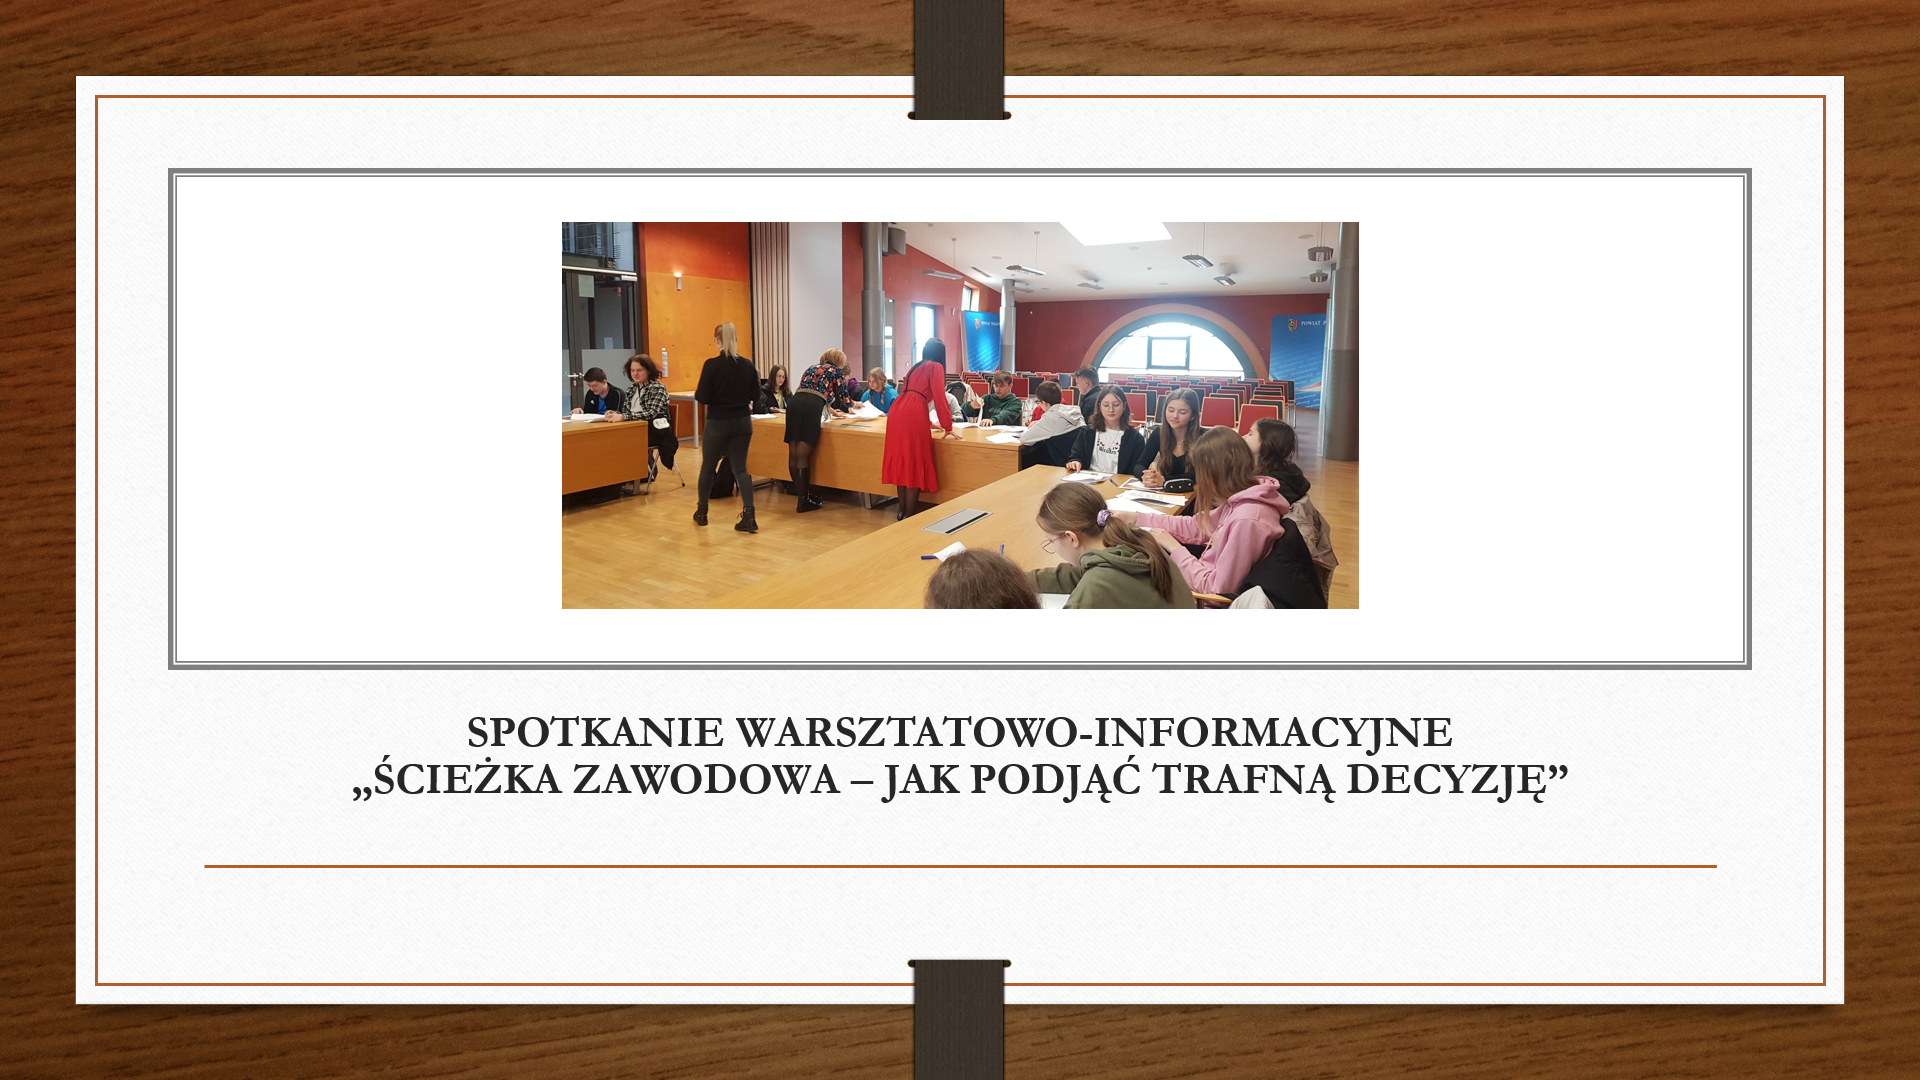 Spotkanie warsztatowo-informacyjne dla uczniów klas ósmych z doradcami zawodowymi Powiatowego Urzędu Pracy w Polkowicach „Ścieżka zawodowa – jak podjąć trafną decyzję”